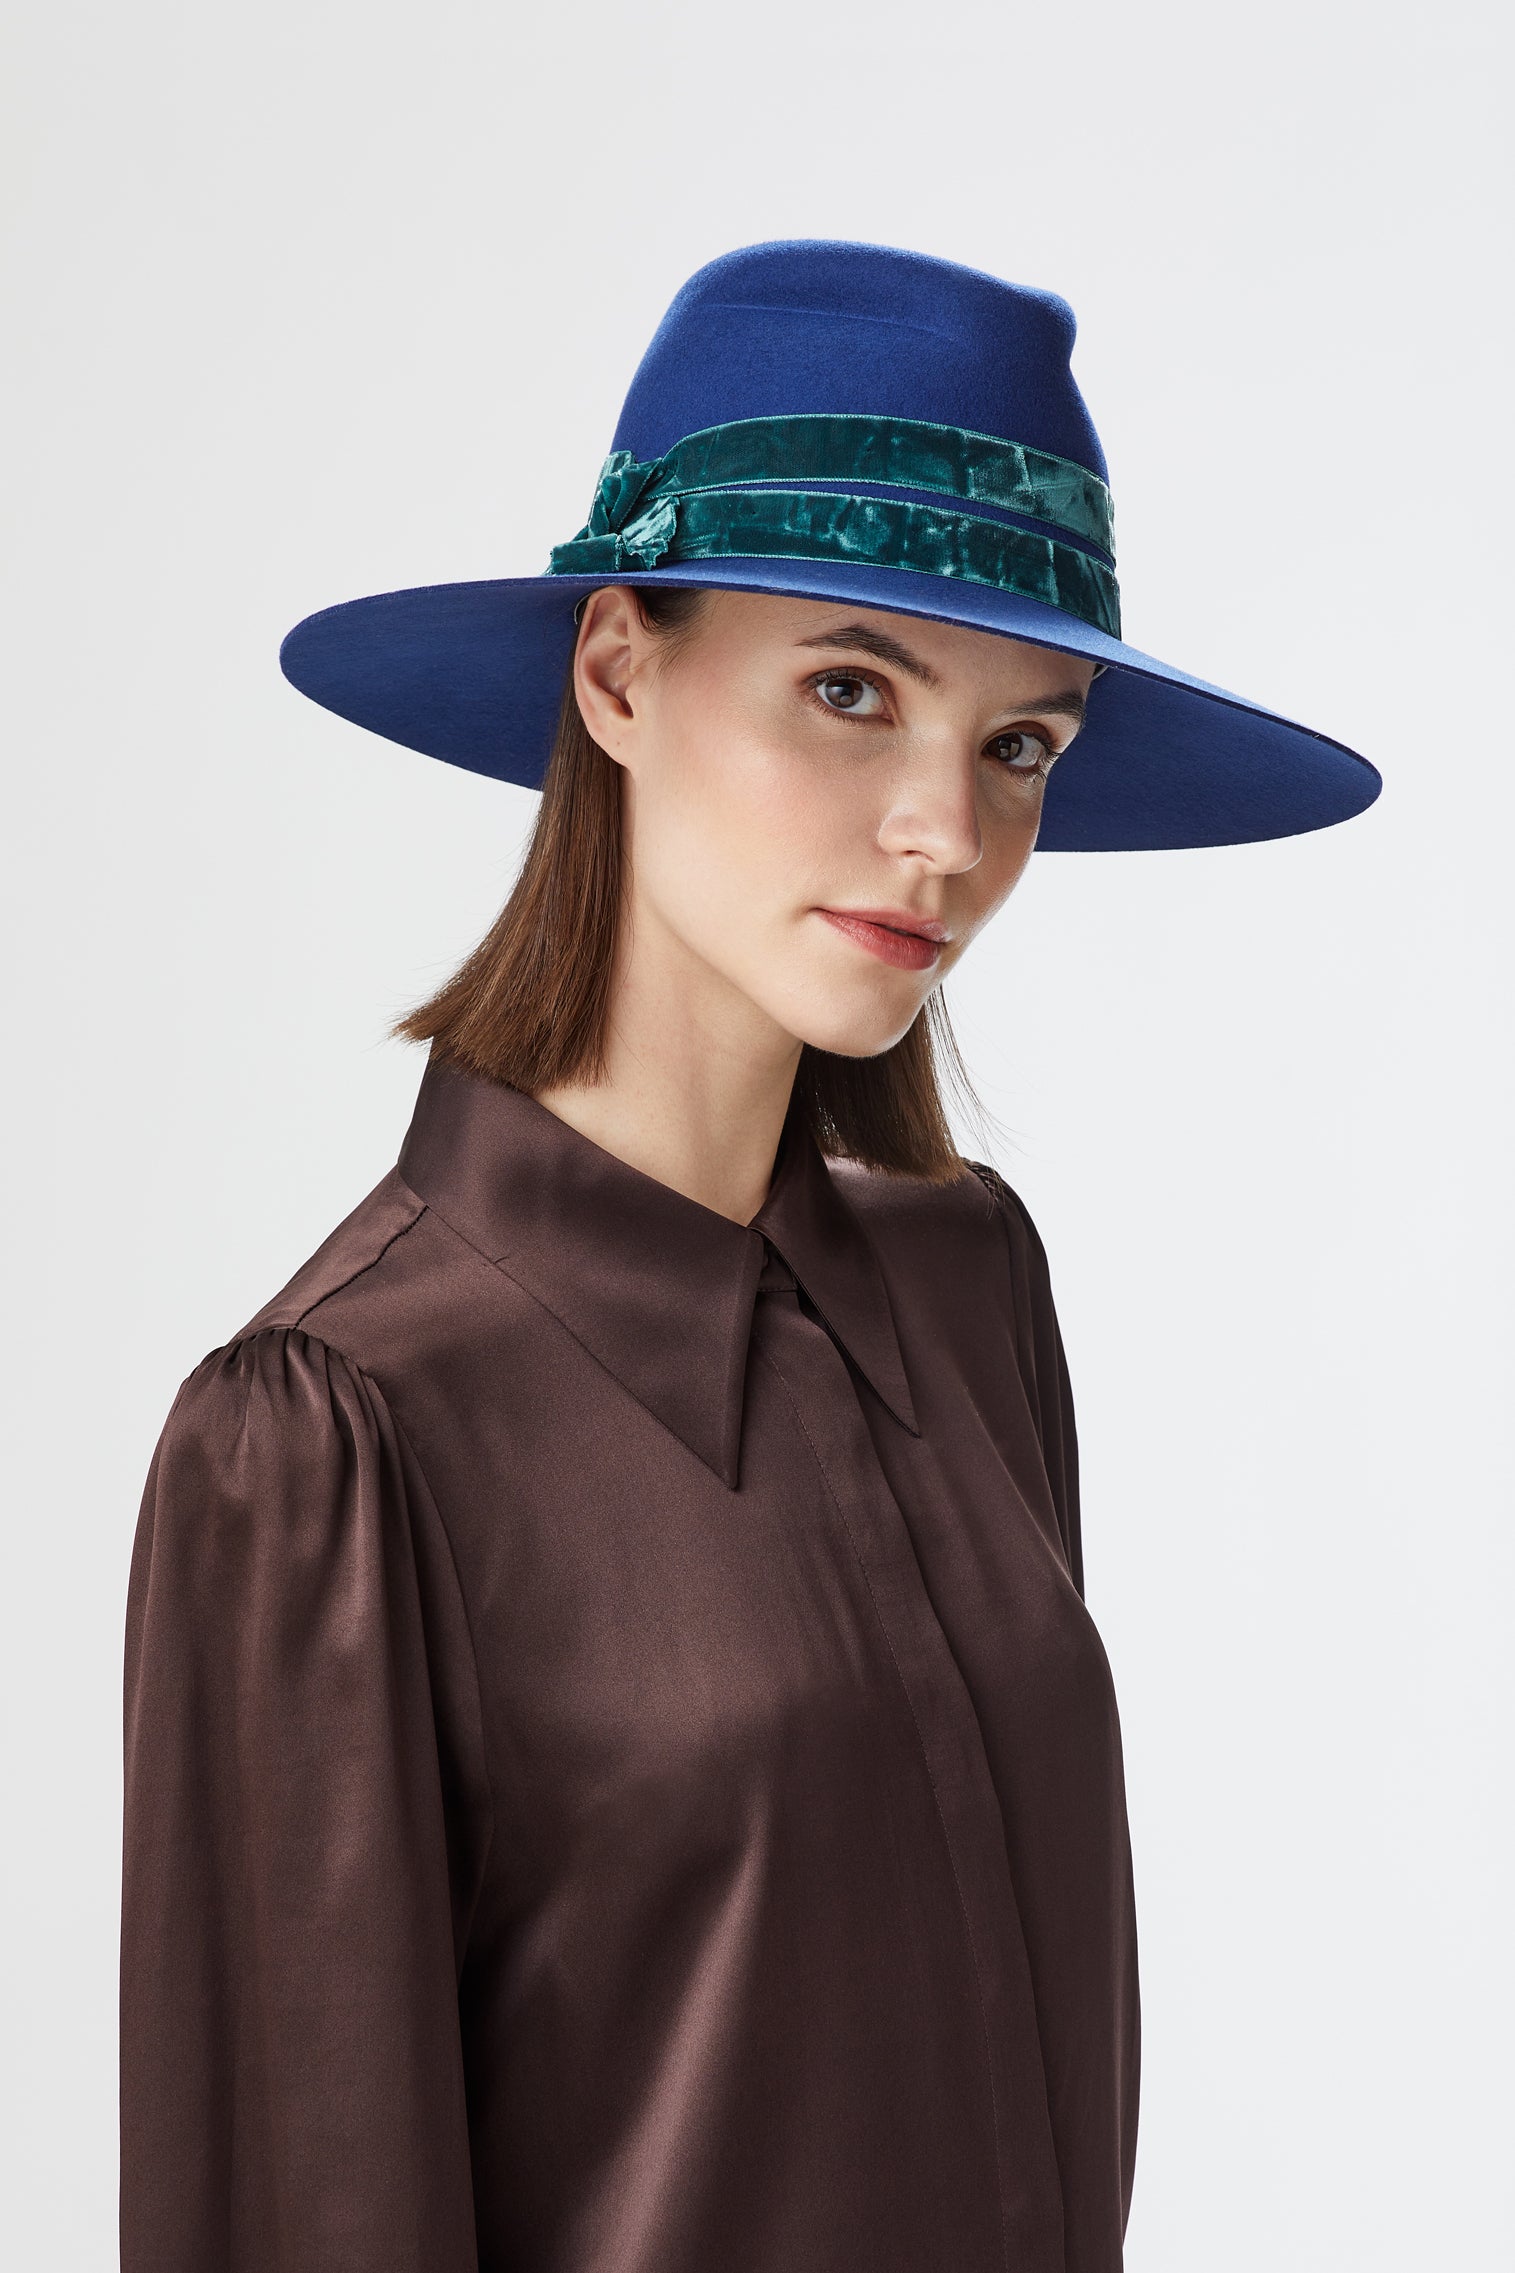 Miranda Blue Fedora - Women’s Hats - Lock & Co. Hatters London UK